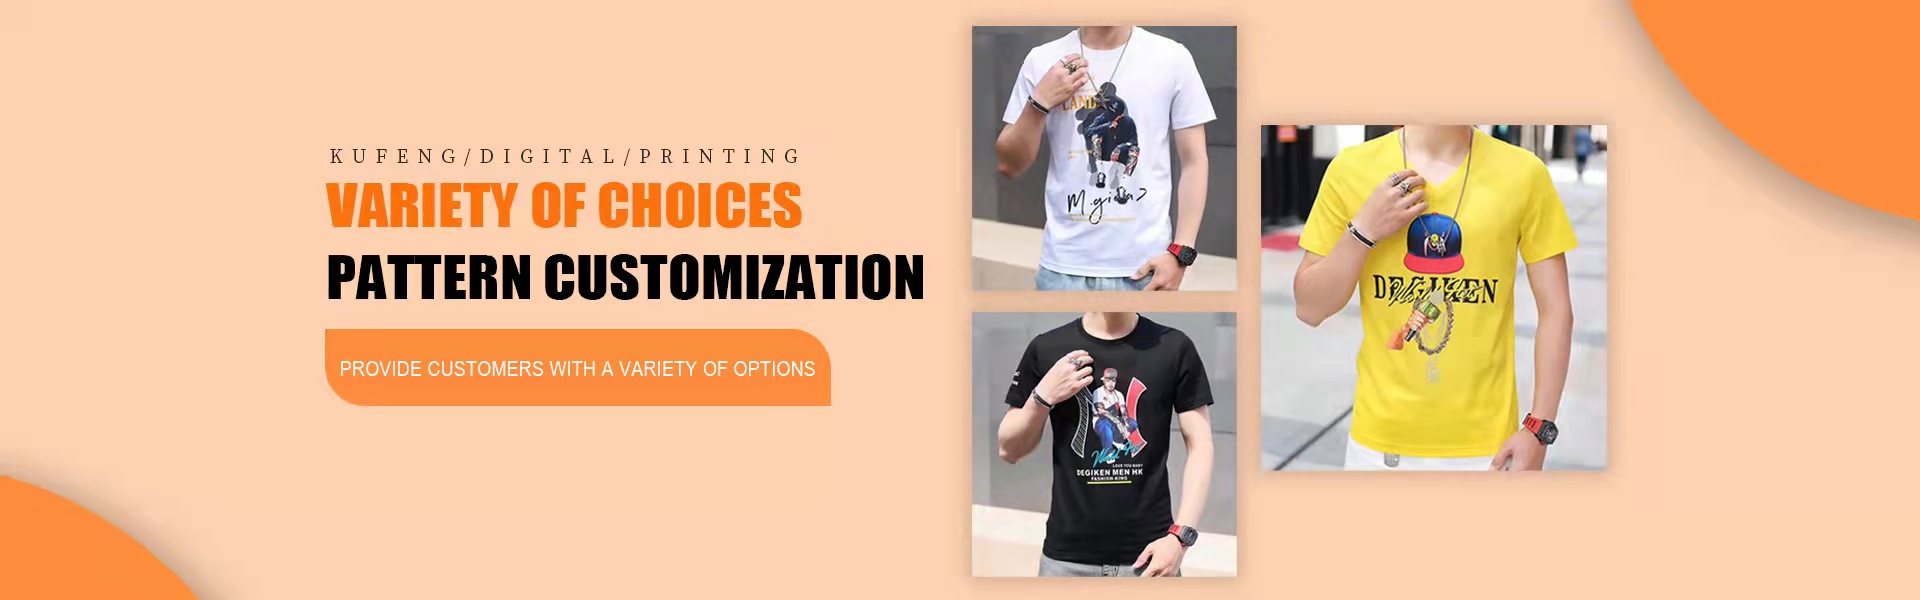 personnalisation de la personnalité, traitement des échantillons entrants, impression numérique,Kufeng digital clothing